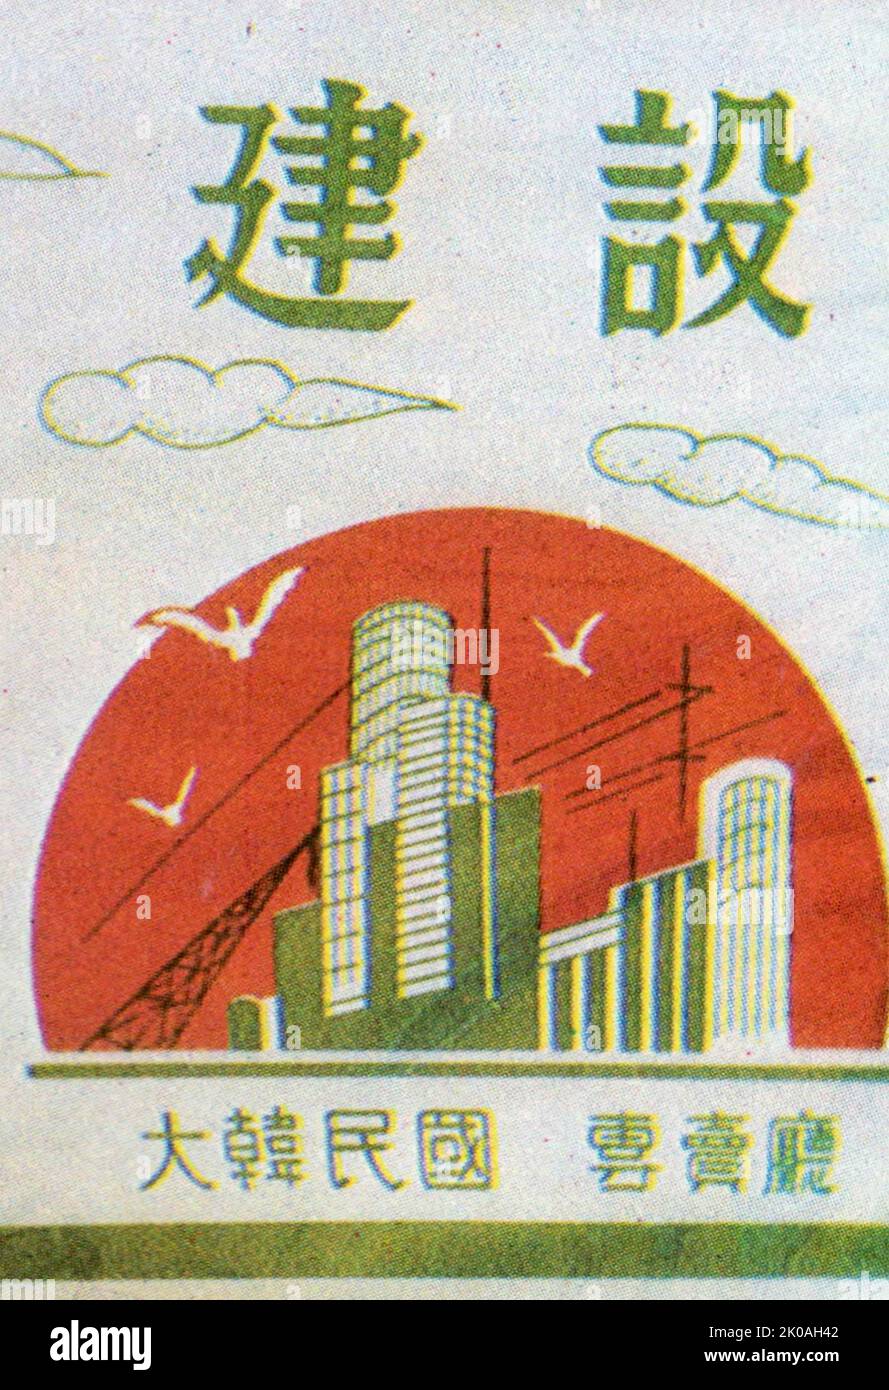 Paquet de cigarettes de 1951 Corée Banque D'Images